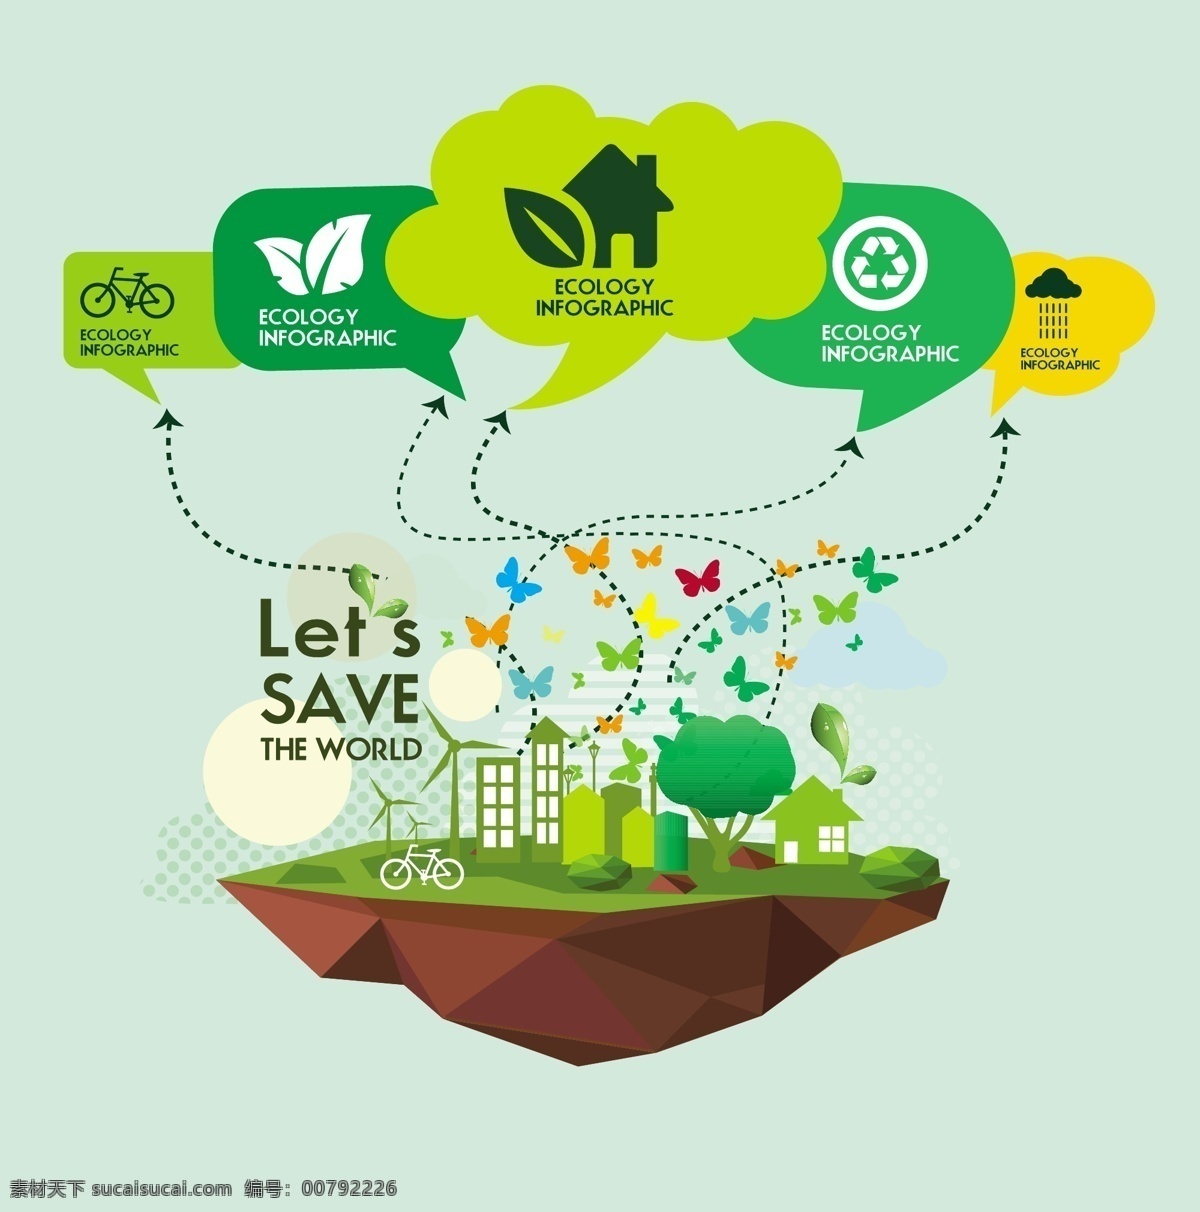 生态信息 环保 创意设计 eco 绿色 绿叶 循环 能源 节能 低碳 生态 回收 环保标志 ppt素材 底纹背景 商务金融 商业插画